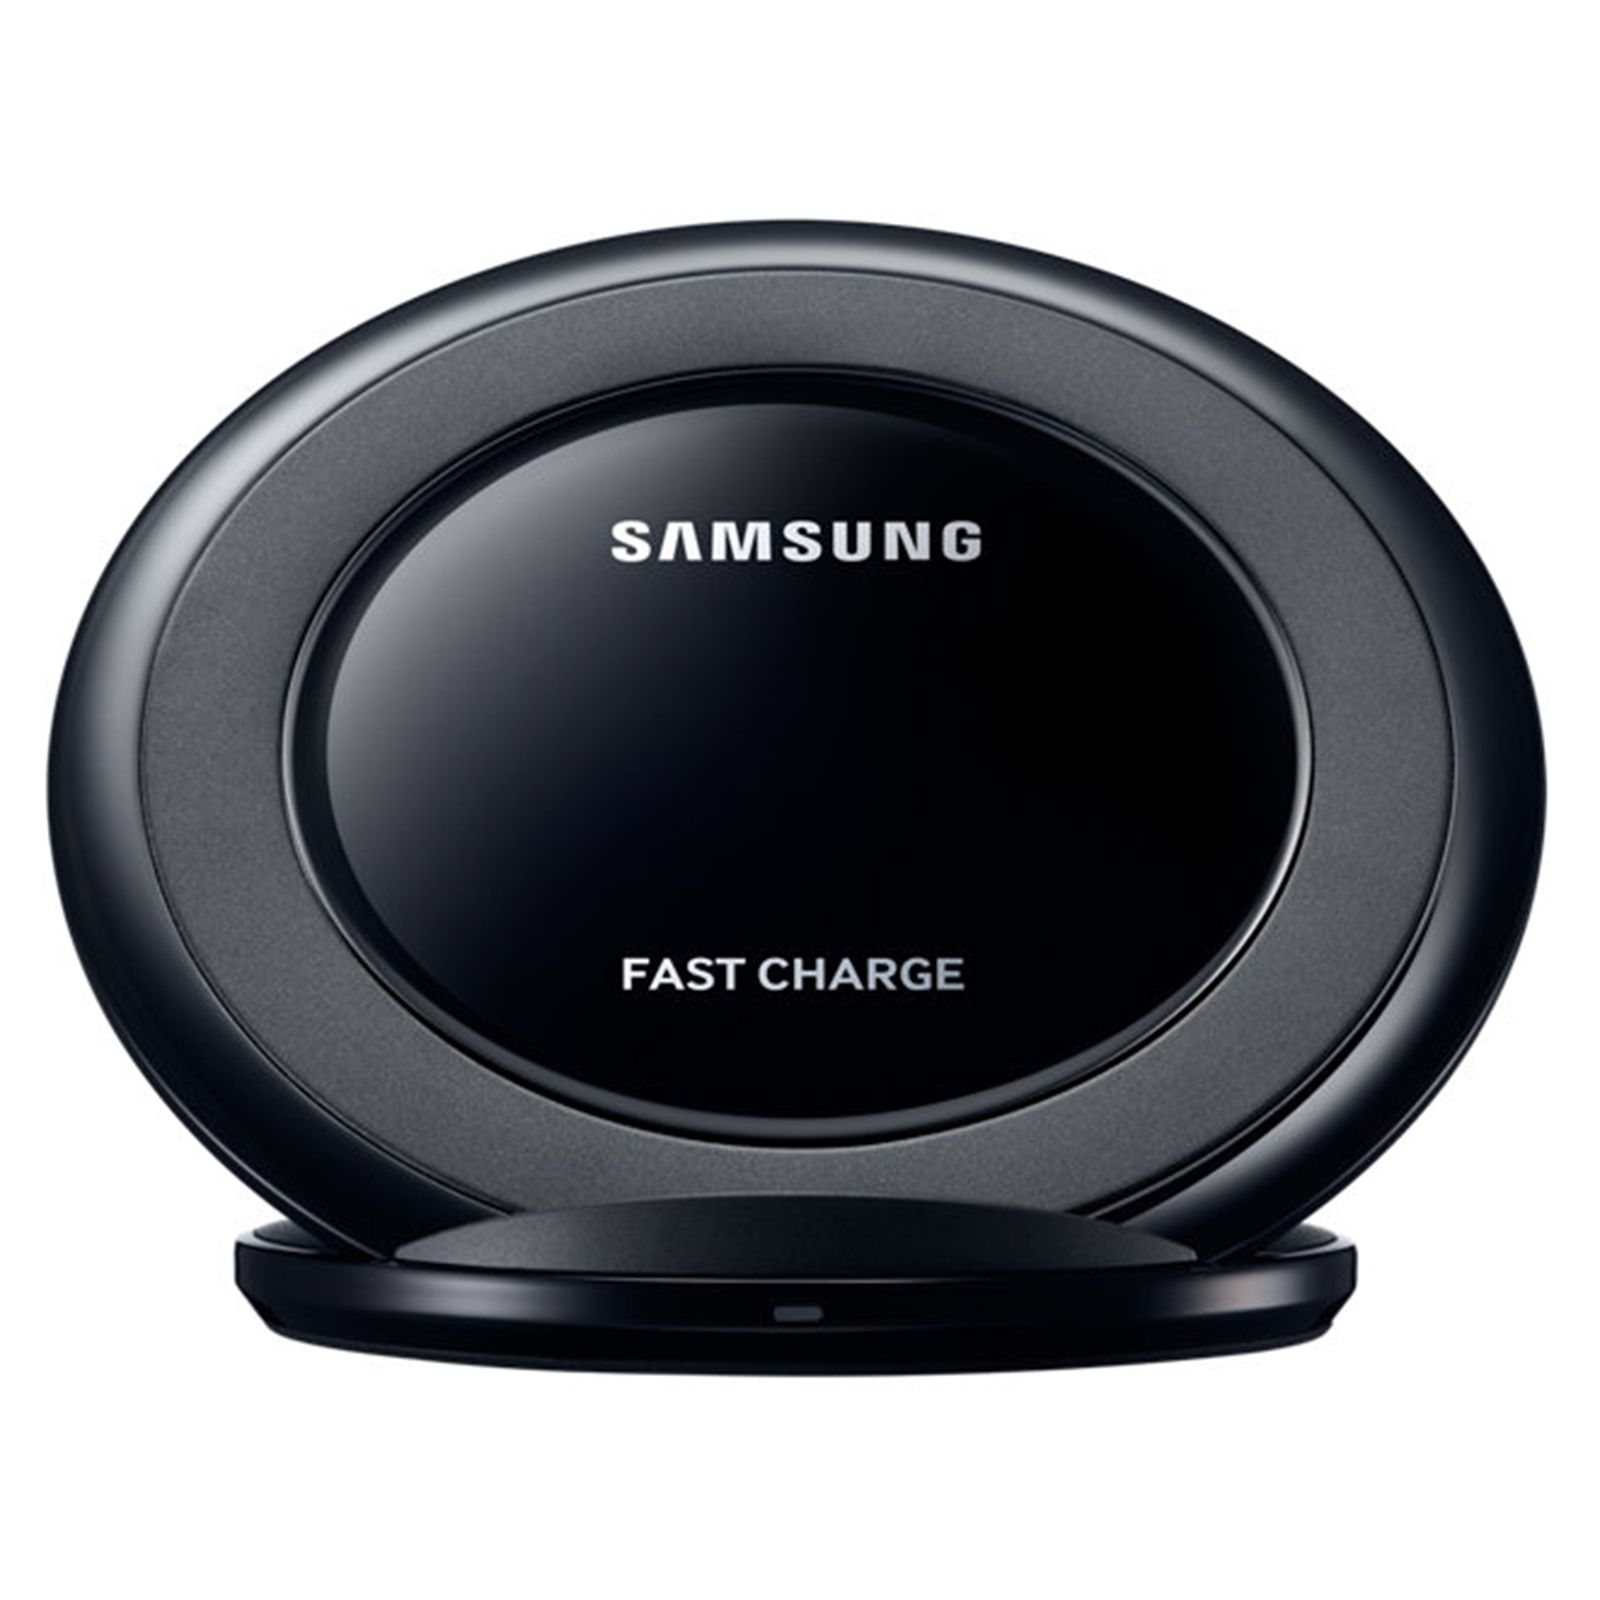 Carregador Samsung Original Wireless Sem Fio Fast Charge Preto S6 S7 S8 S9  - Chic Outlet - Economize com estilo!